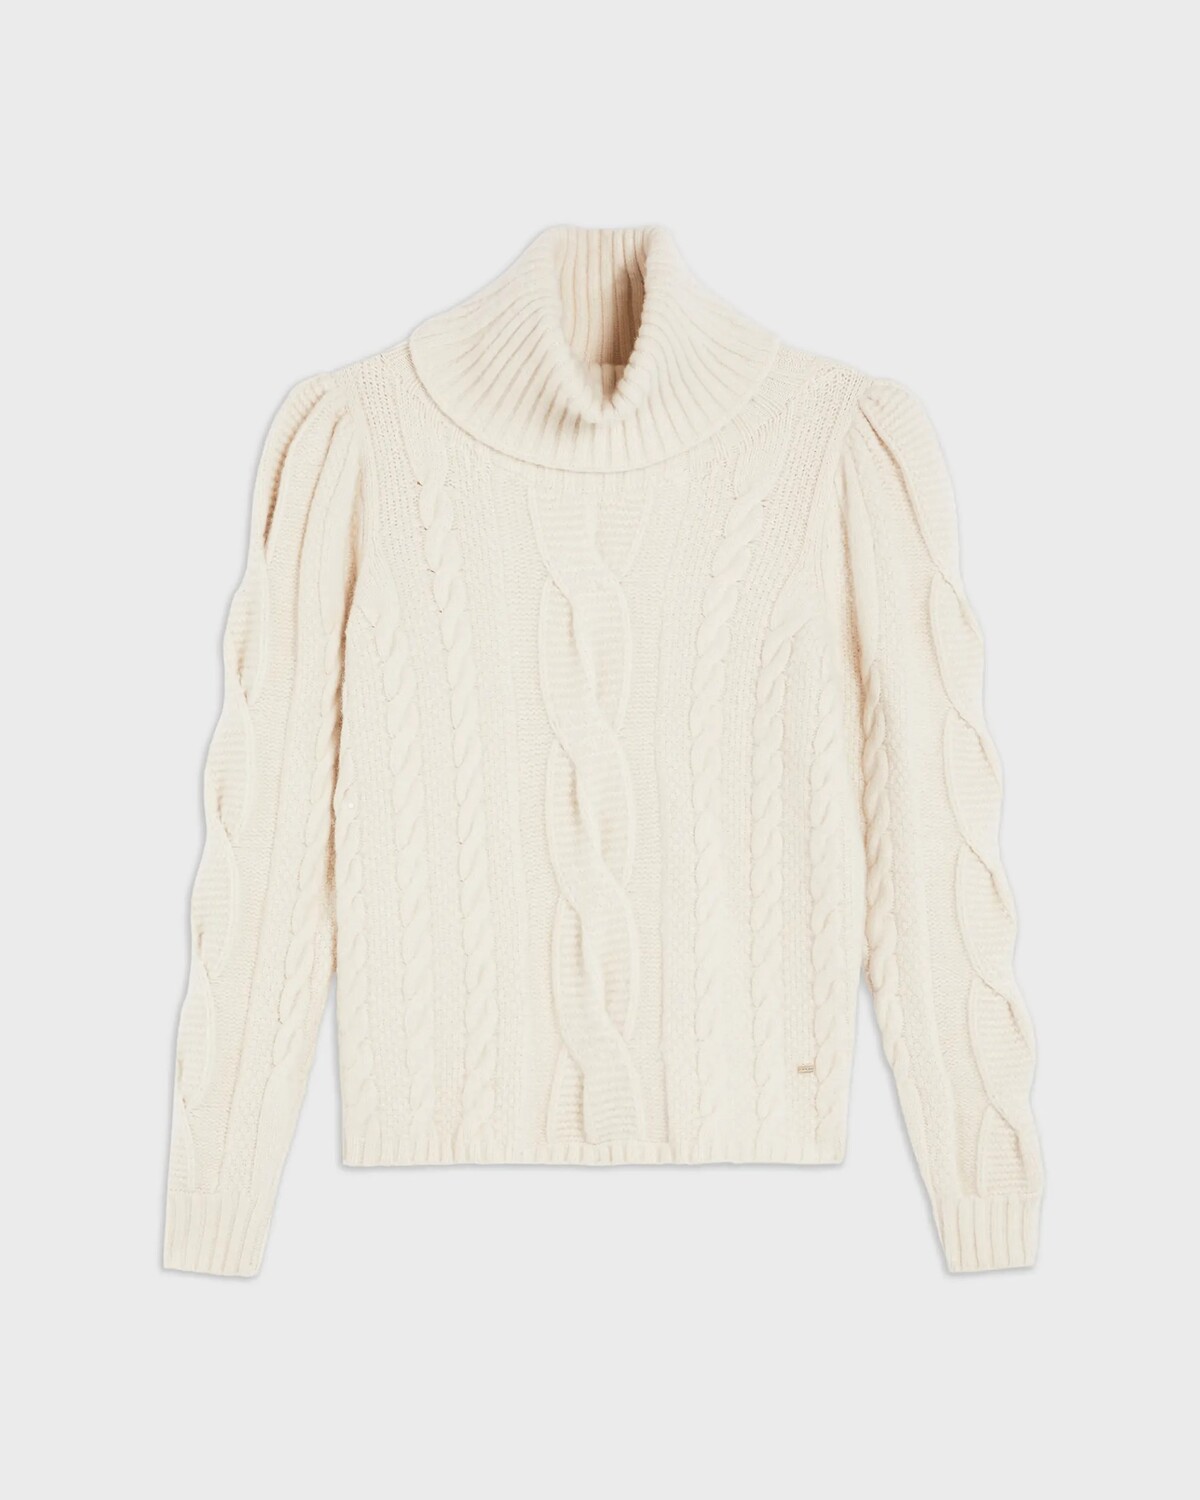 Chladné počasie zachráni tento robustný úpletový sveter značky Ted Baker London. Skutočne všestranný model si môžeš obliecť k plisovanej sukni, ako aj ku klasickým nohaviciam. Mať ho môžeš za 190 €.

